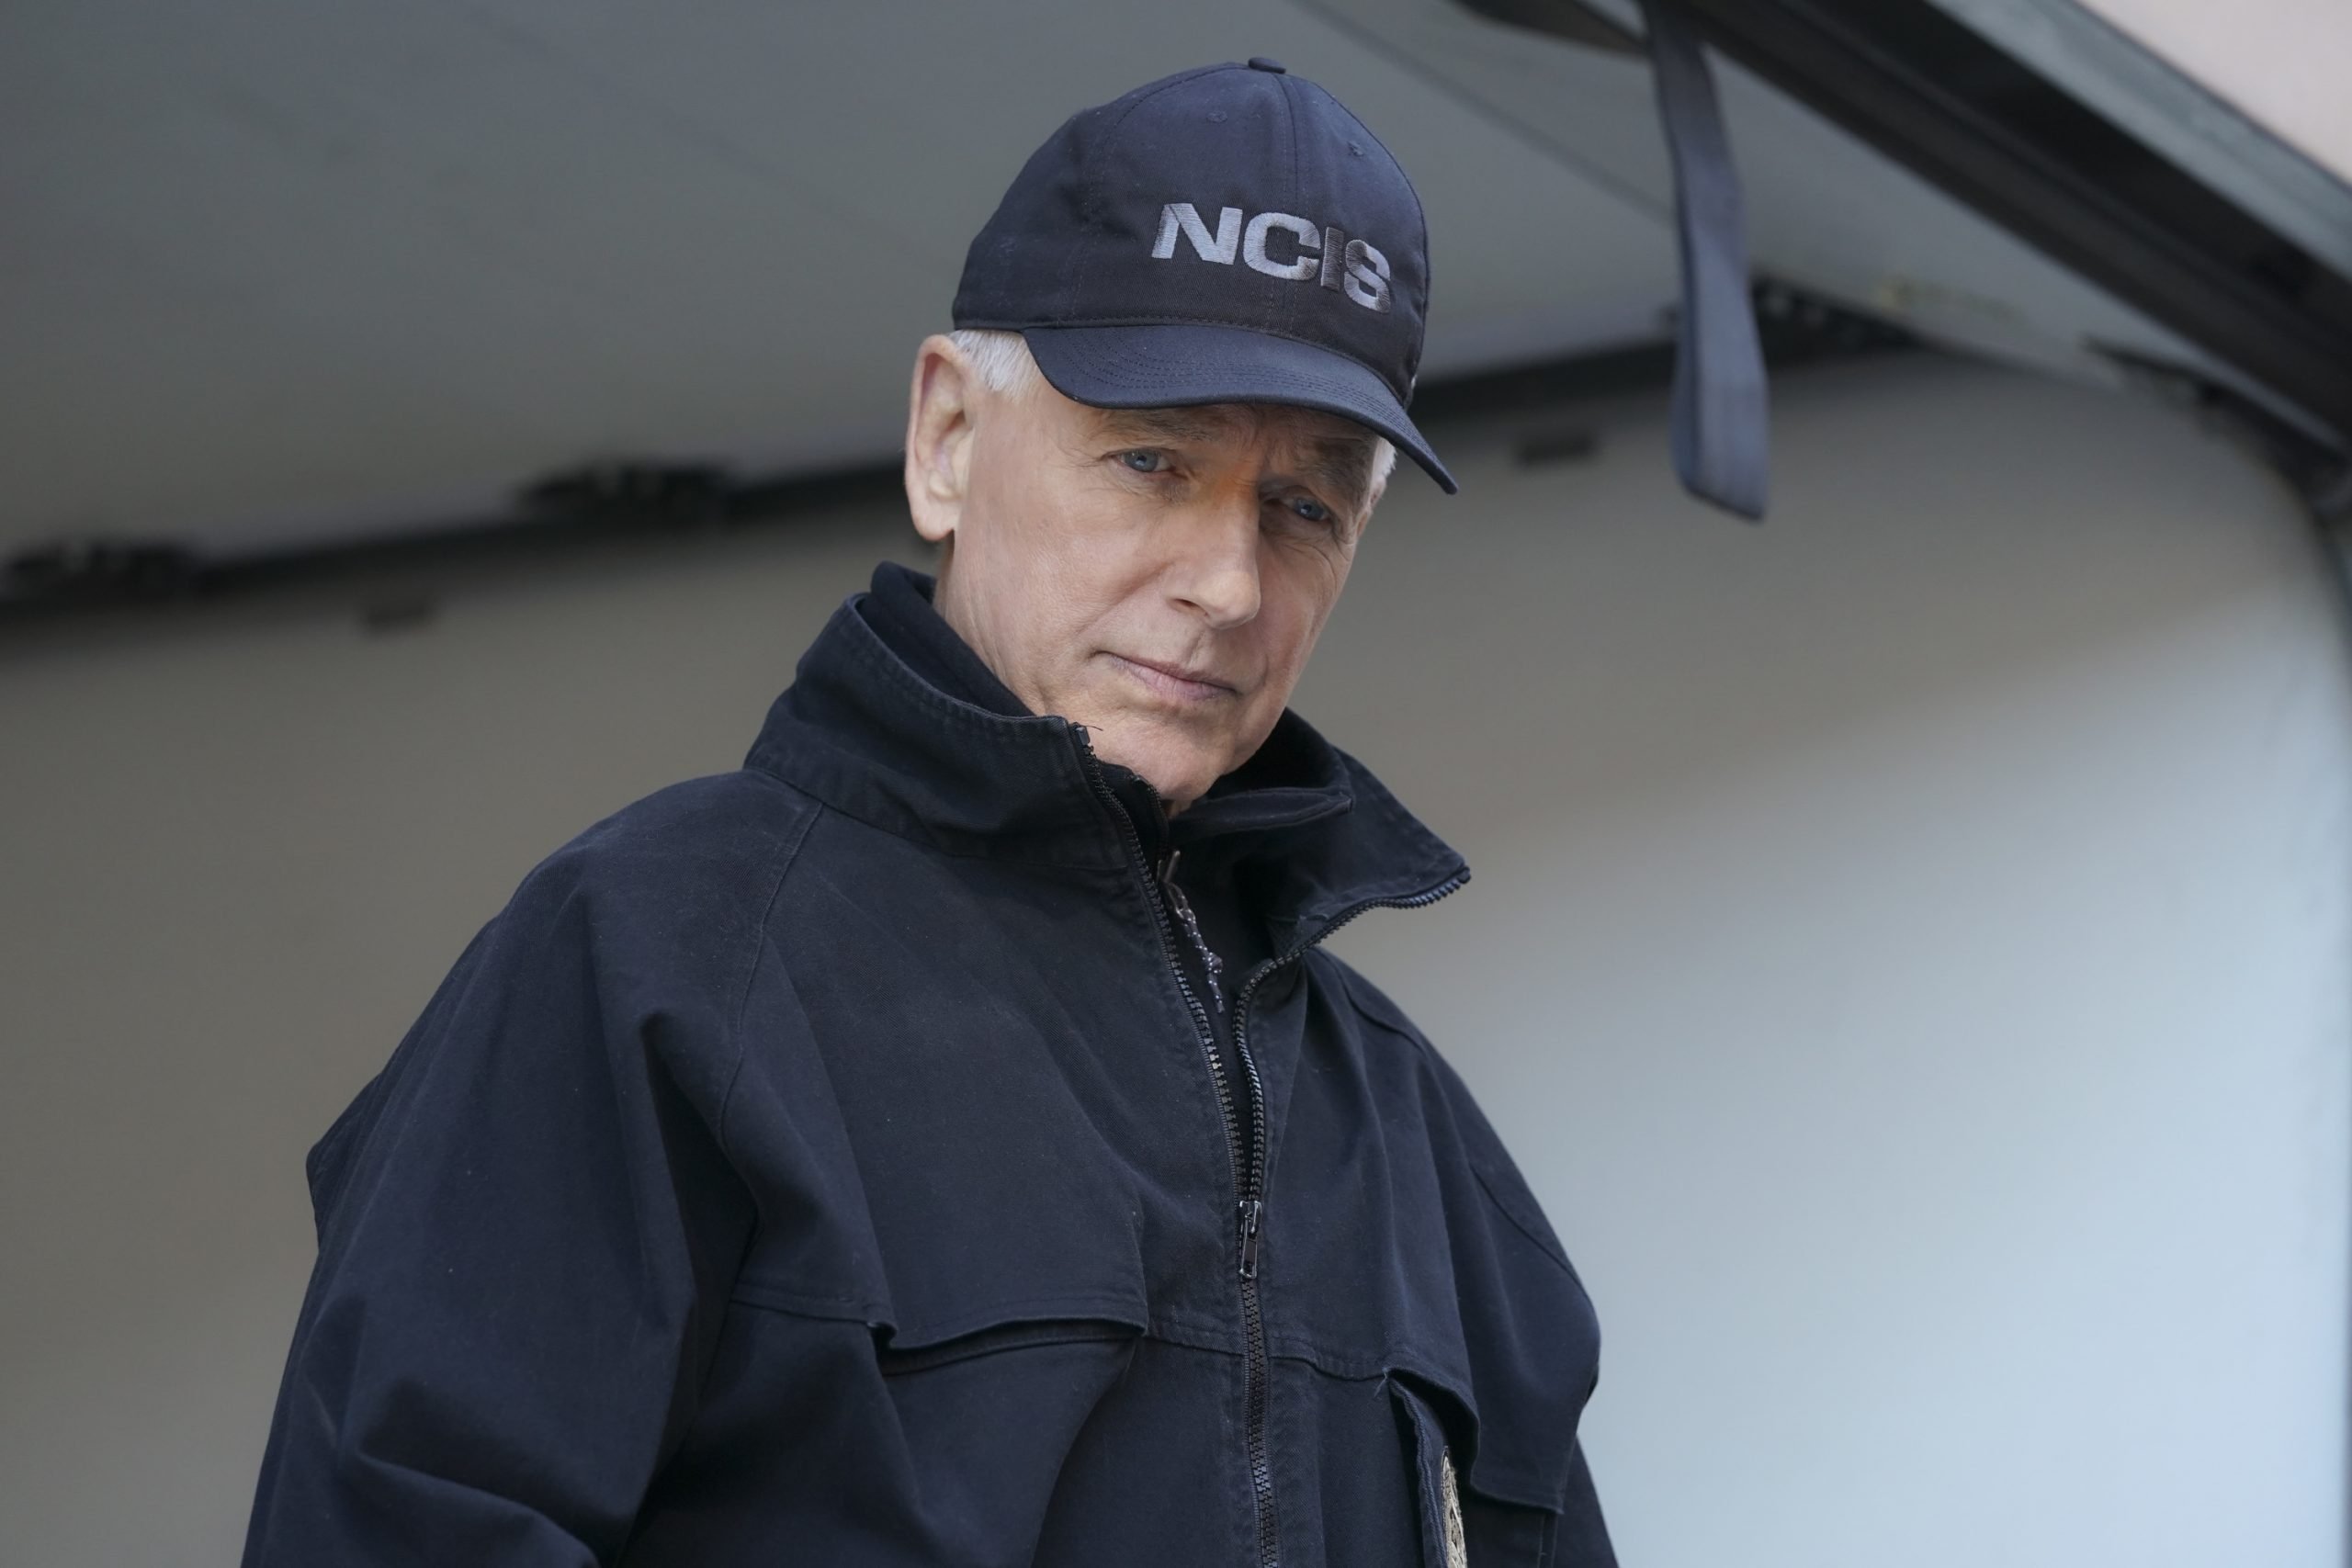 Mark Harmon as Leroy Jethro Gibbs on the set of NCIS.